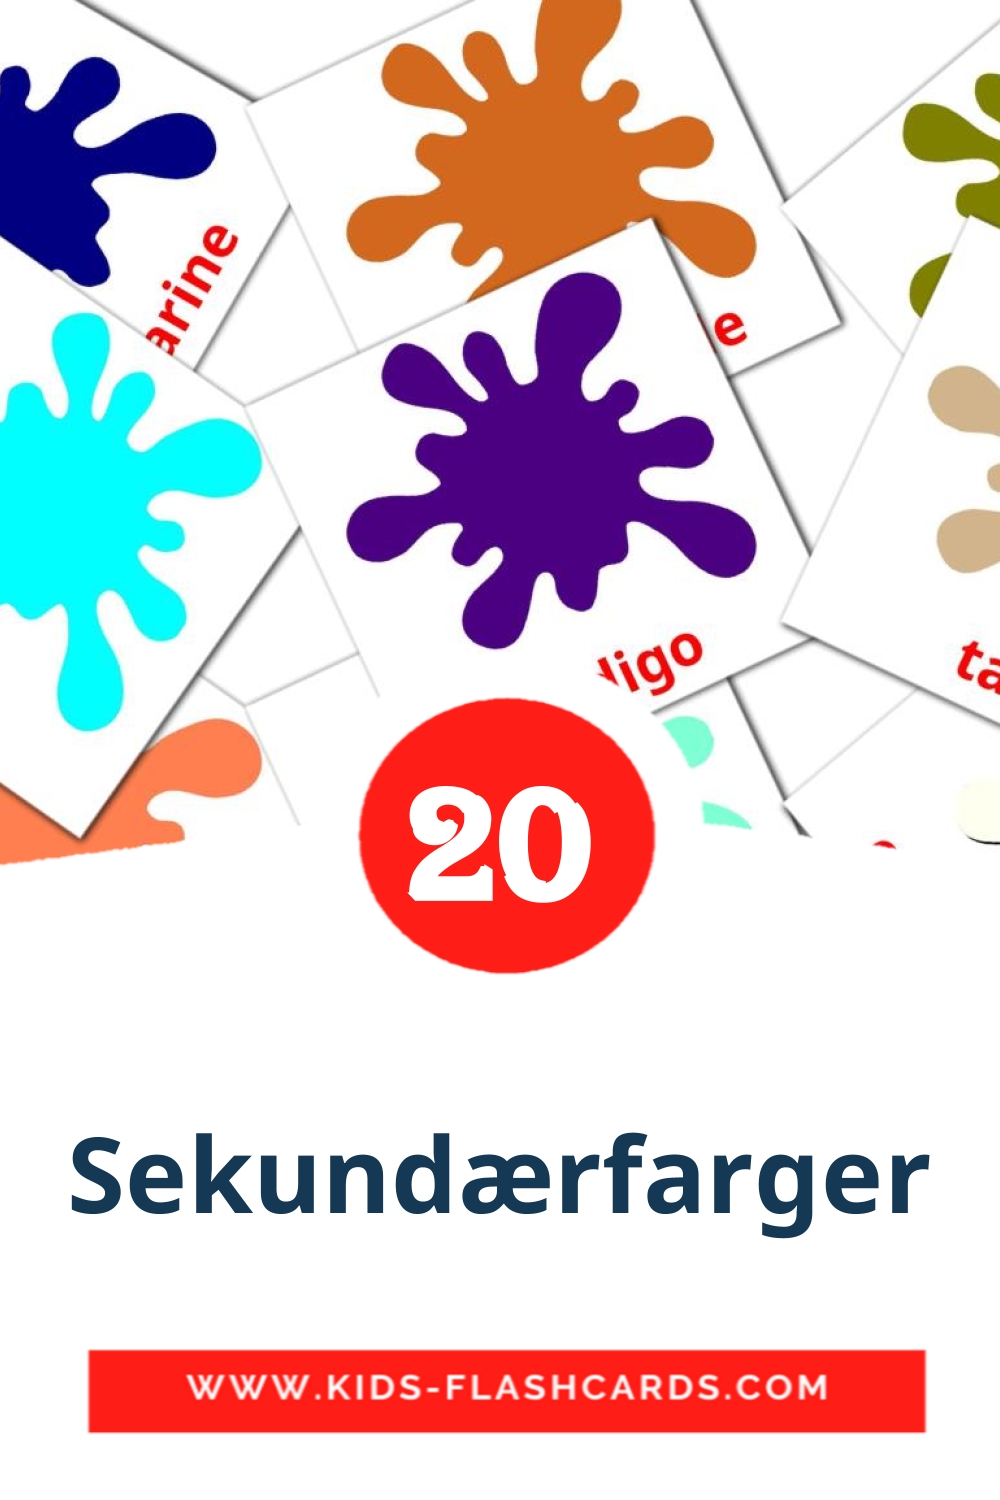 20 cartes illustrées de Sekundærfarger pour la maternelle en norvégien